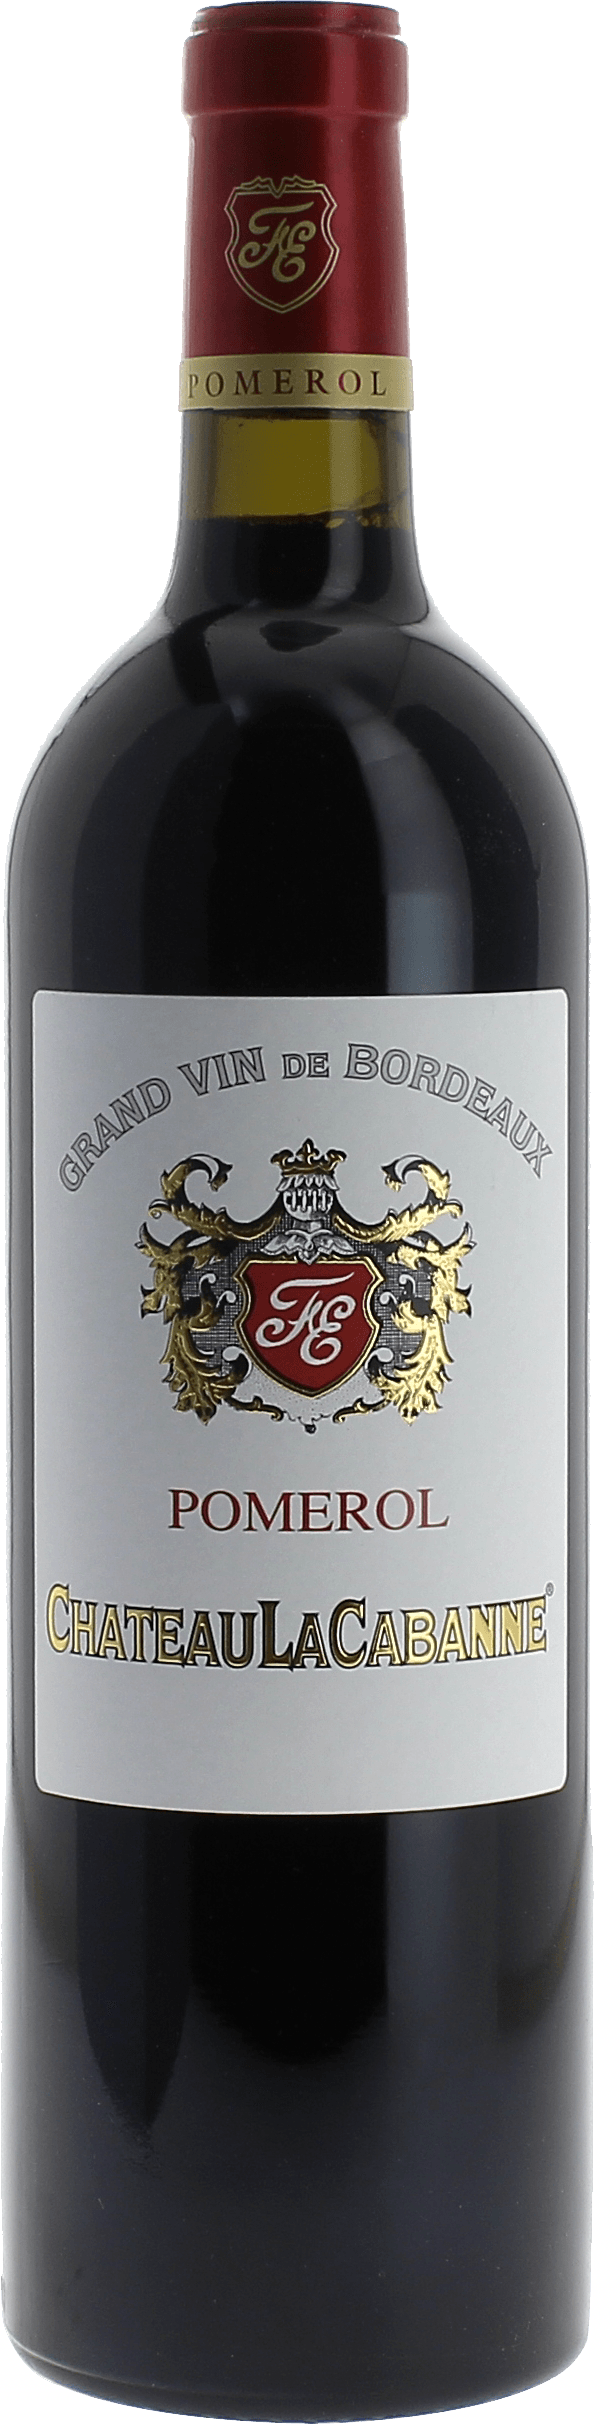 La cabanne 2017  Pomerol, Bordeaux rouge